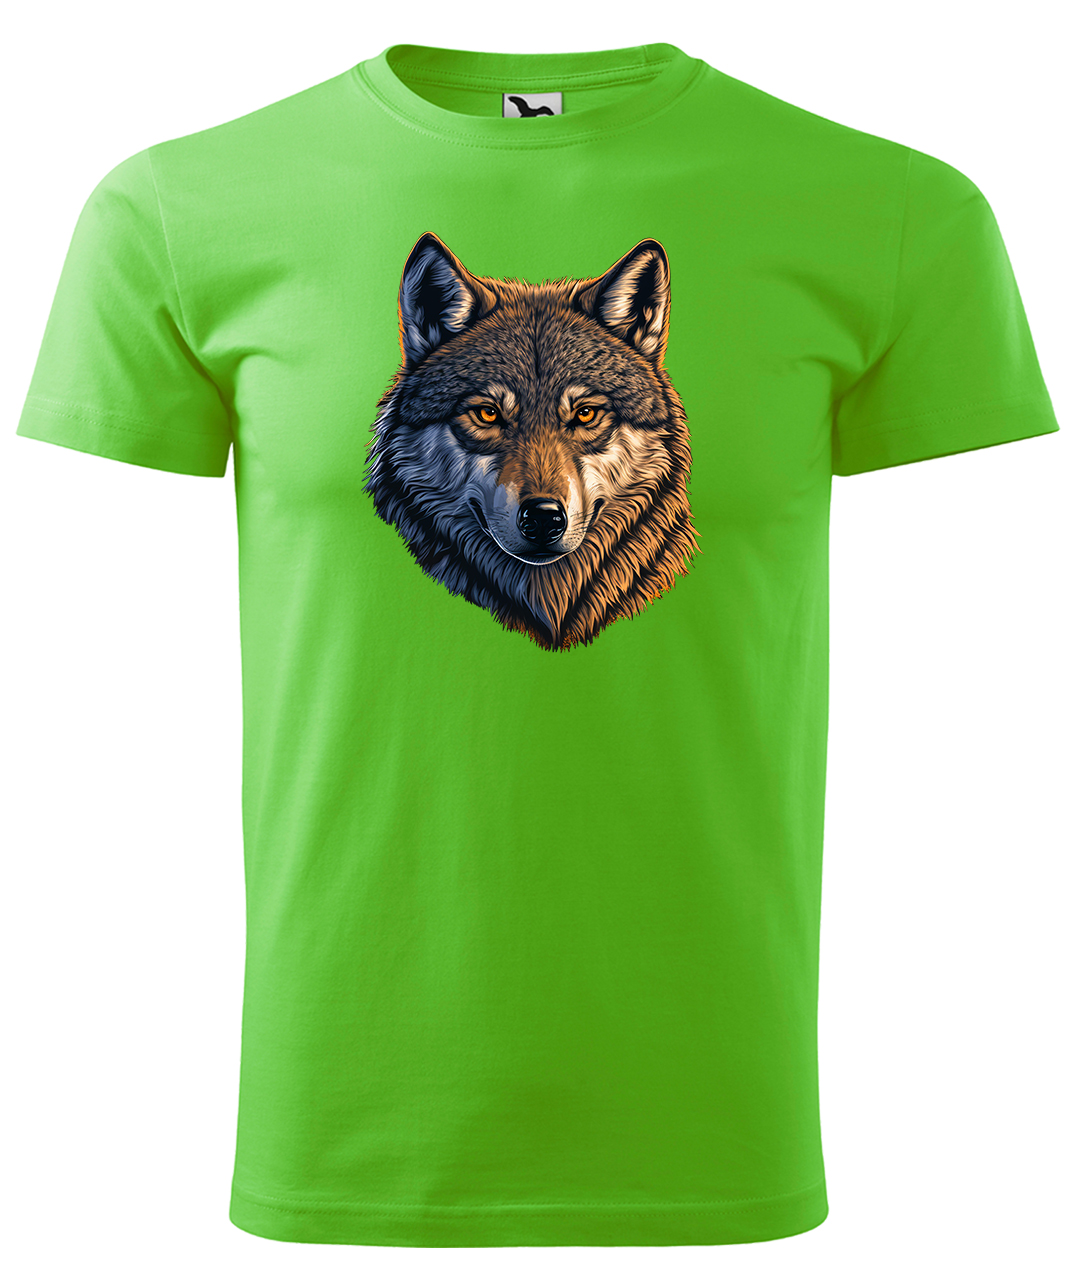 Dětské tričko s vlkem - Hlava vlka Velikost: 6 let / 122 cm, Barva: Apple Green (92), Délka rukávu: Krátký rukáv